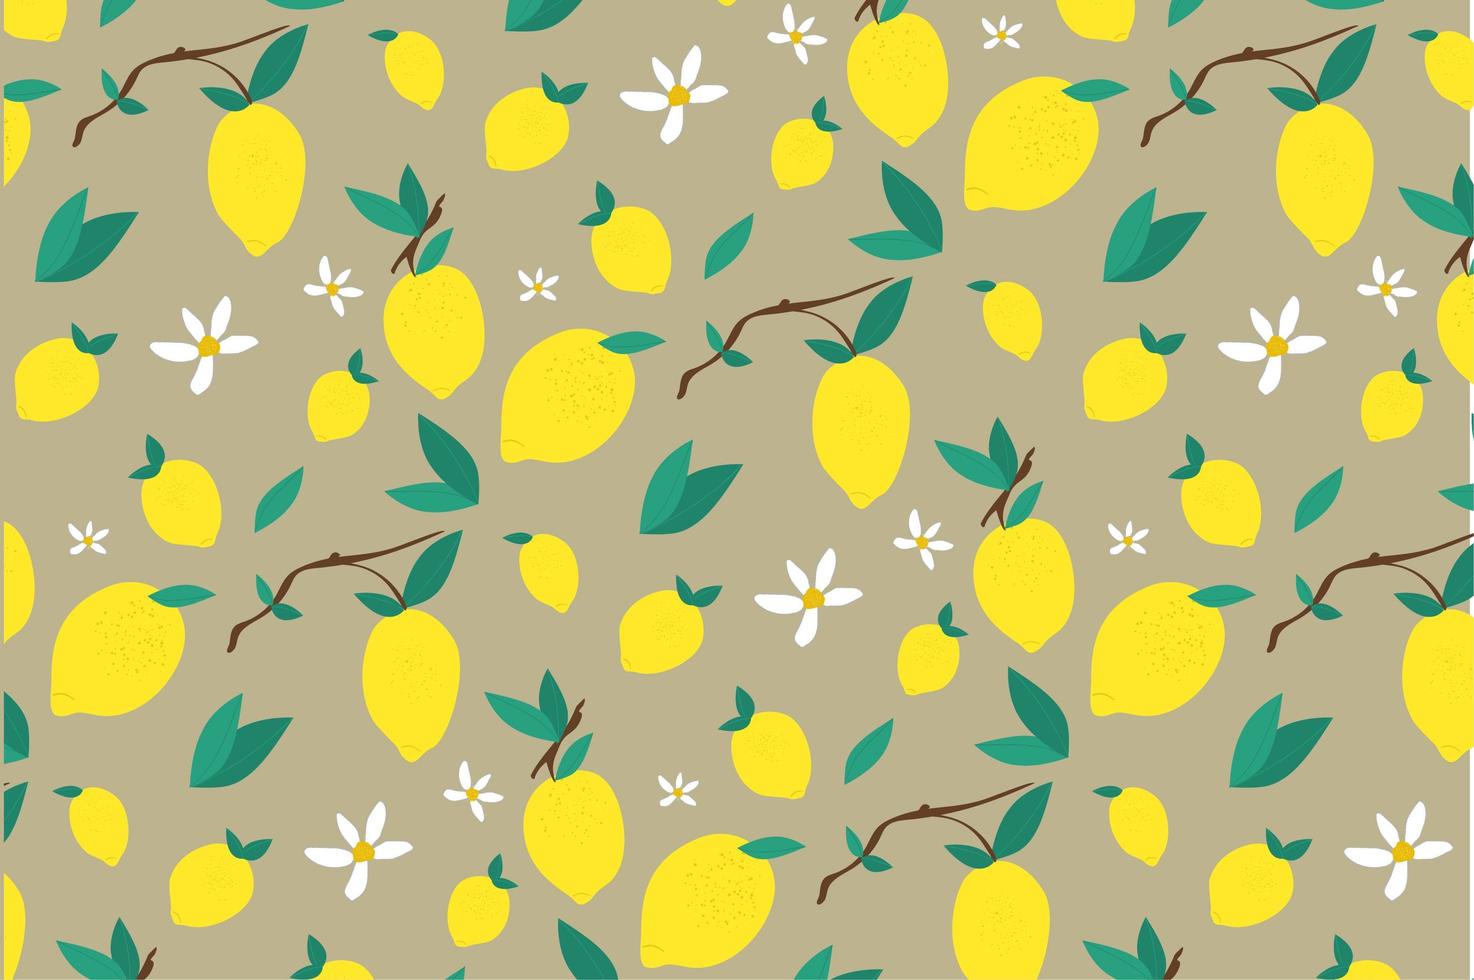 Lemon and Leaf Flower Pattern  vector